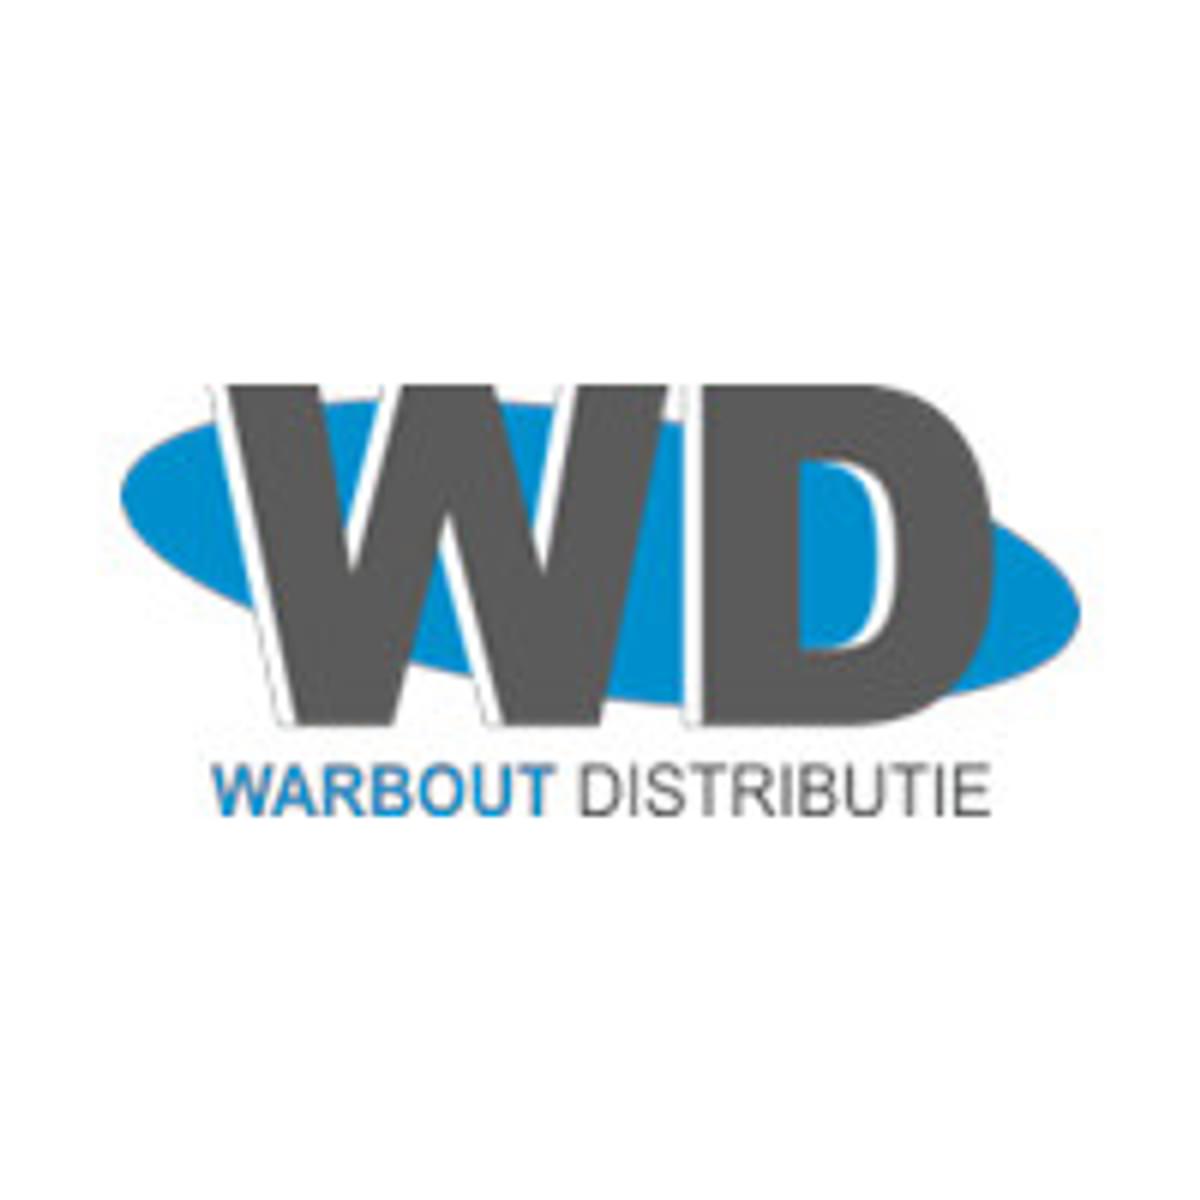 Warbout Distributie stelt Jakko Tol aan als commercieel directeur image